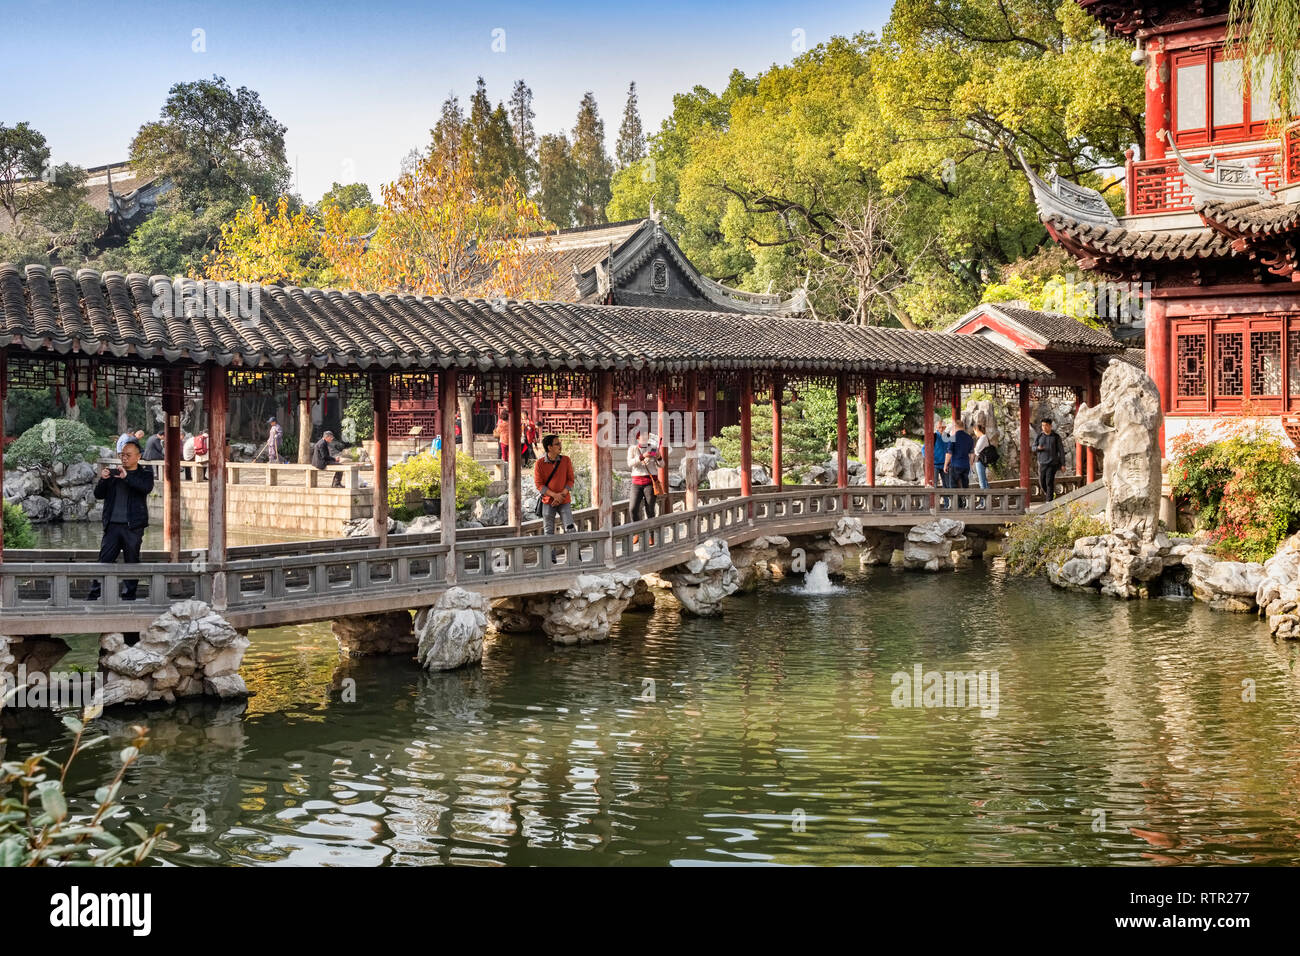 29 Novembre 2018 : Shanghai, Chine - Le couloir de l'eau de Jade pont sur un lac dans le Jardin Yu, une partie de la vieille ville de Shanghai. Banque D'Images